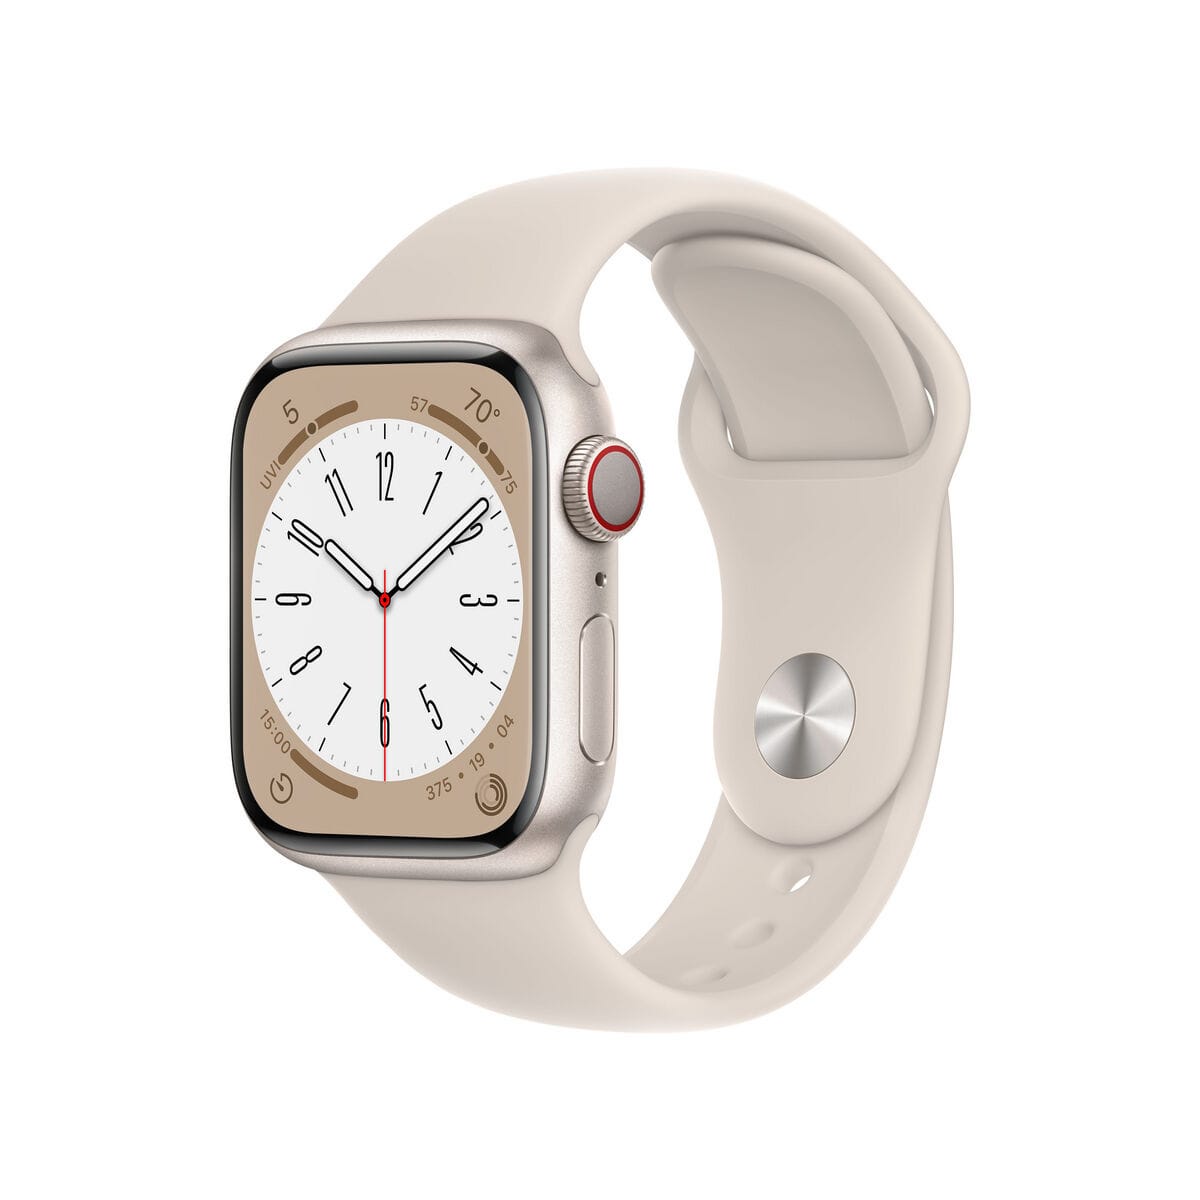 La nouvelle montre d'Apple permet de mesurer la tension artérielle